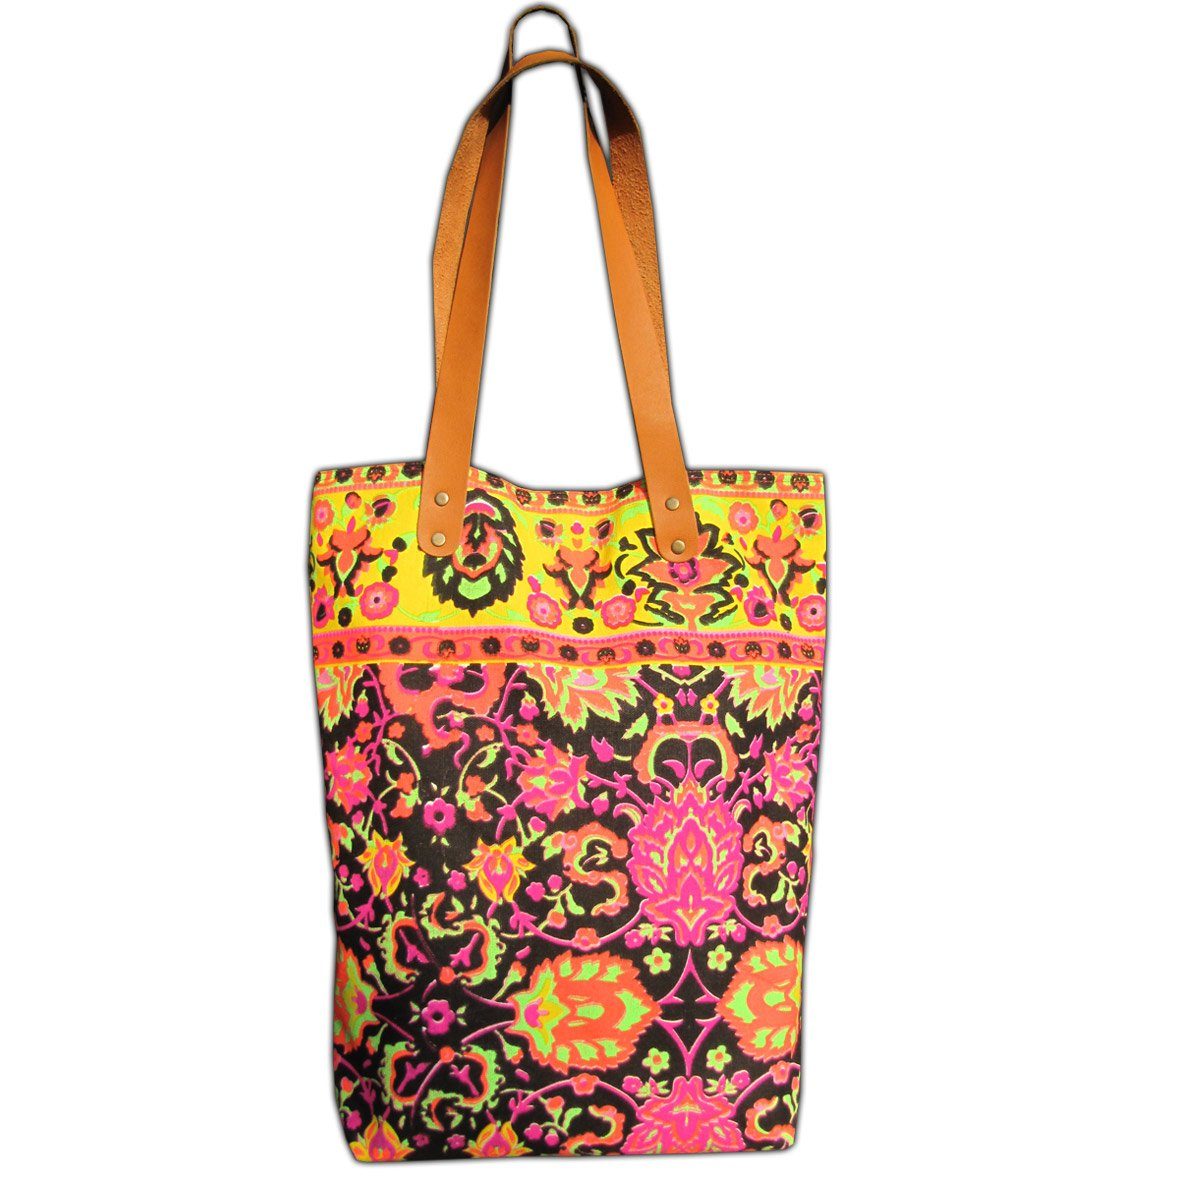 PANASIAM Freizeittasche Neonbunte Schultertasche aus festem Canvas auch als Einkaufstasche, Strandtasche oder Wickeltasche ideal Henkel aus veganem Kunstleder Schwarz